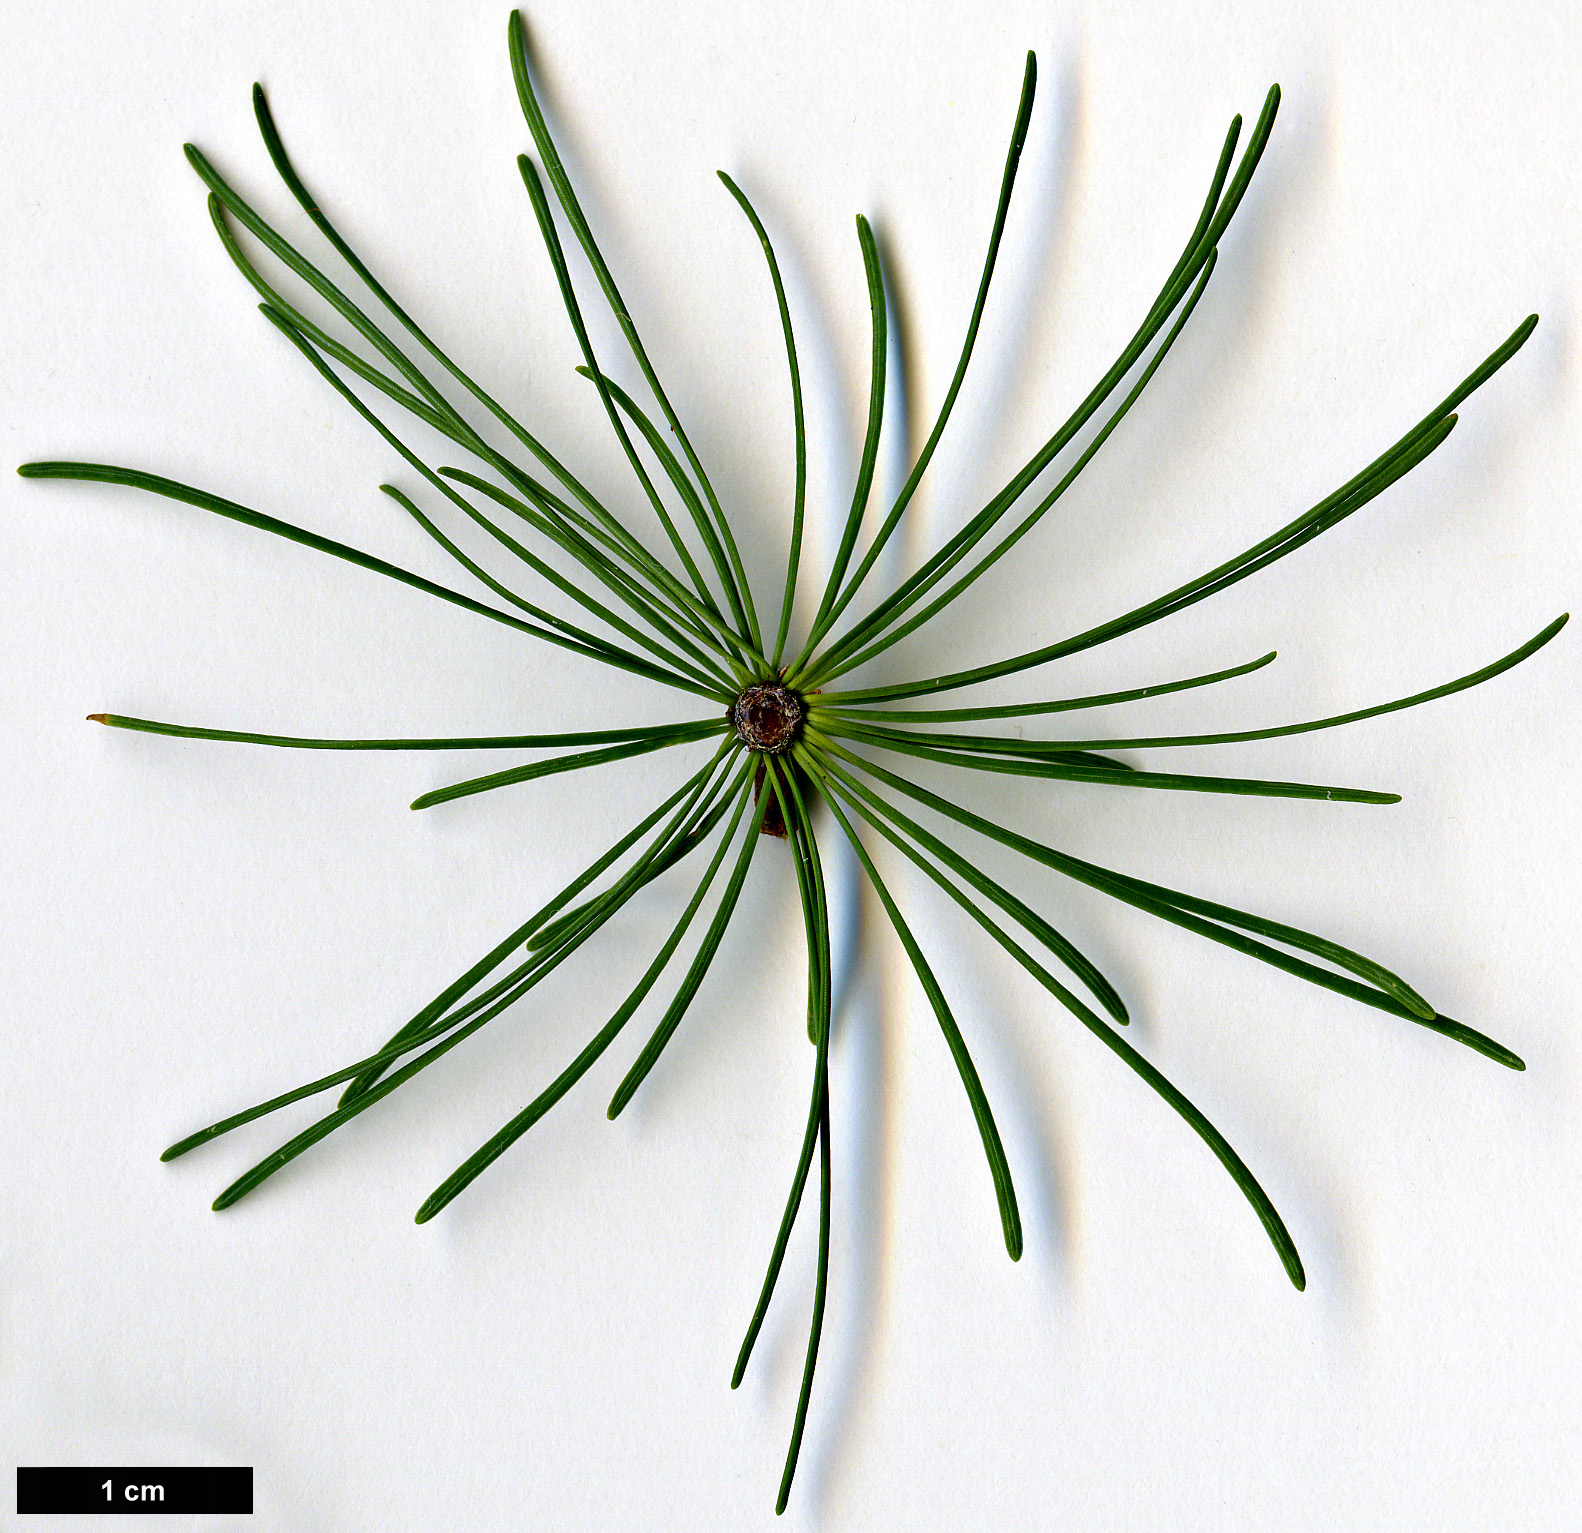 High resolution image: Family: Pinaceae - Genus: Larix - Taxon: laricina